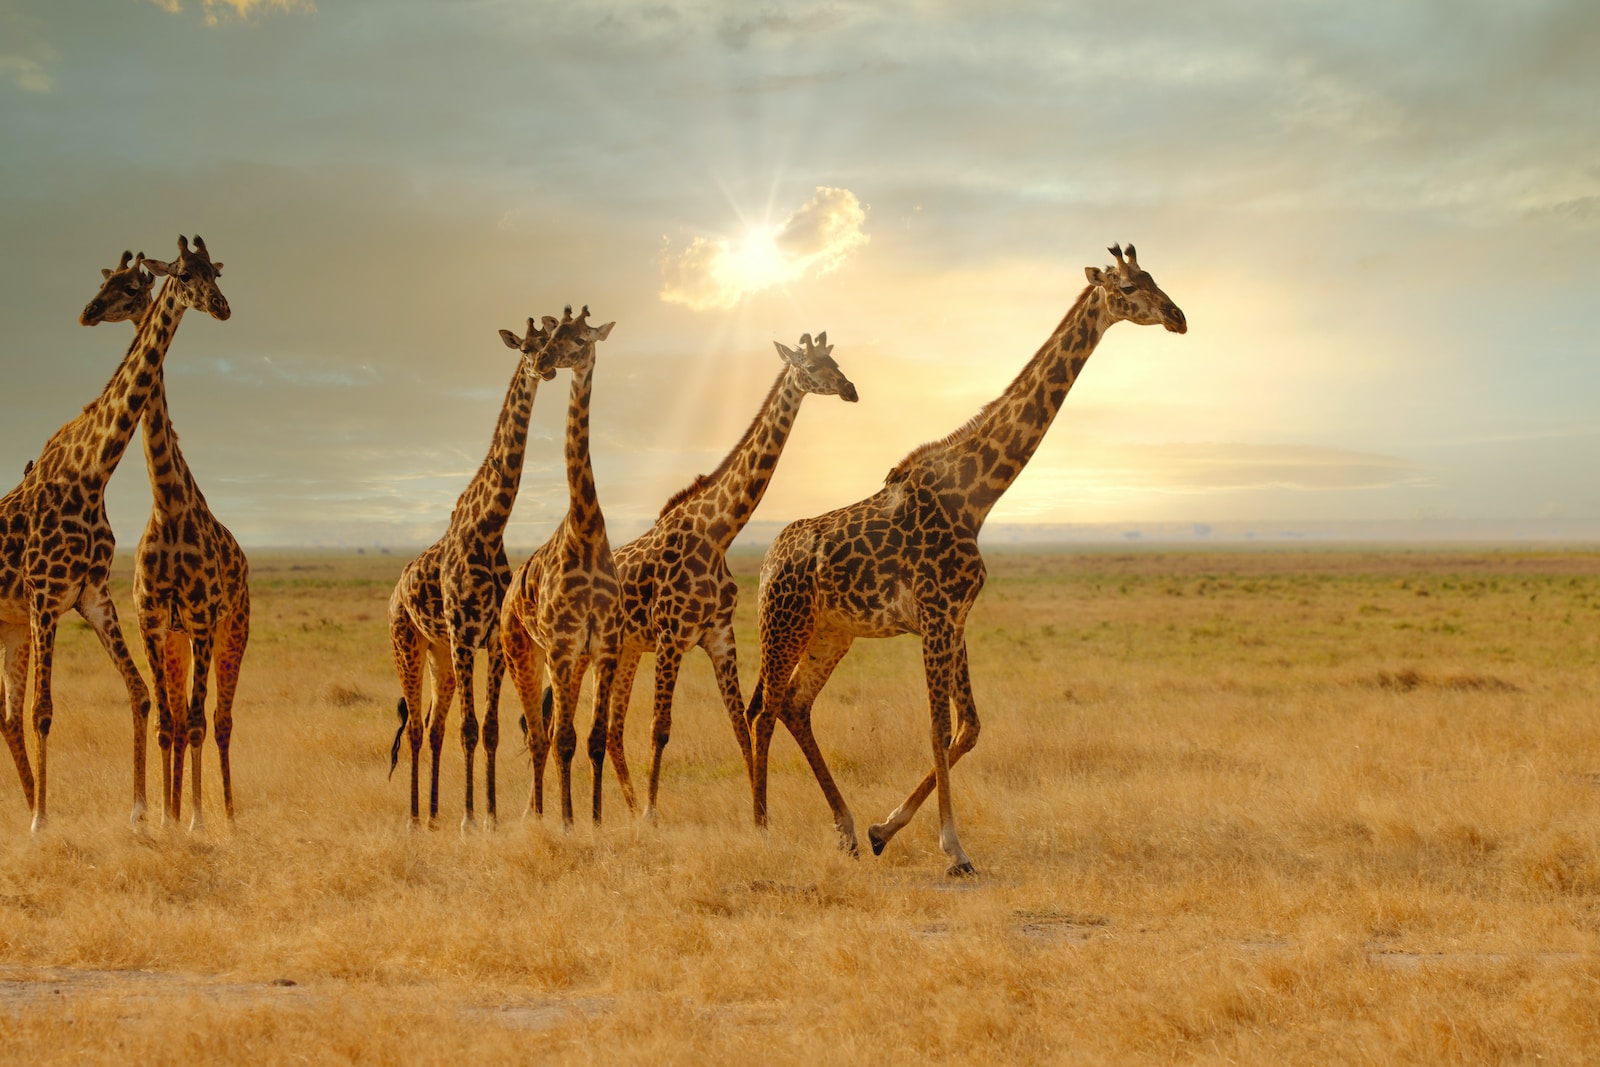 a group of giraffes walking in a field